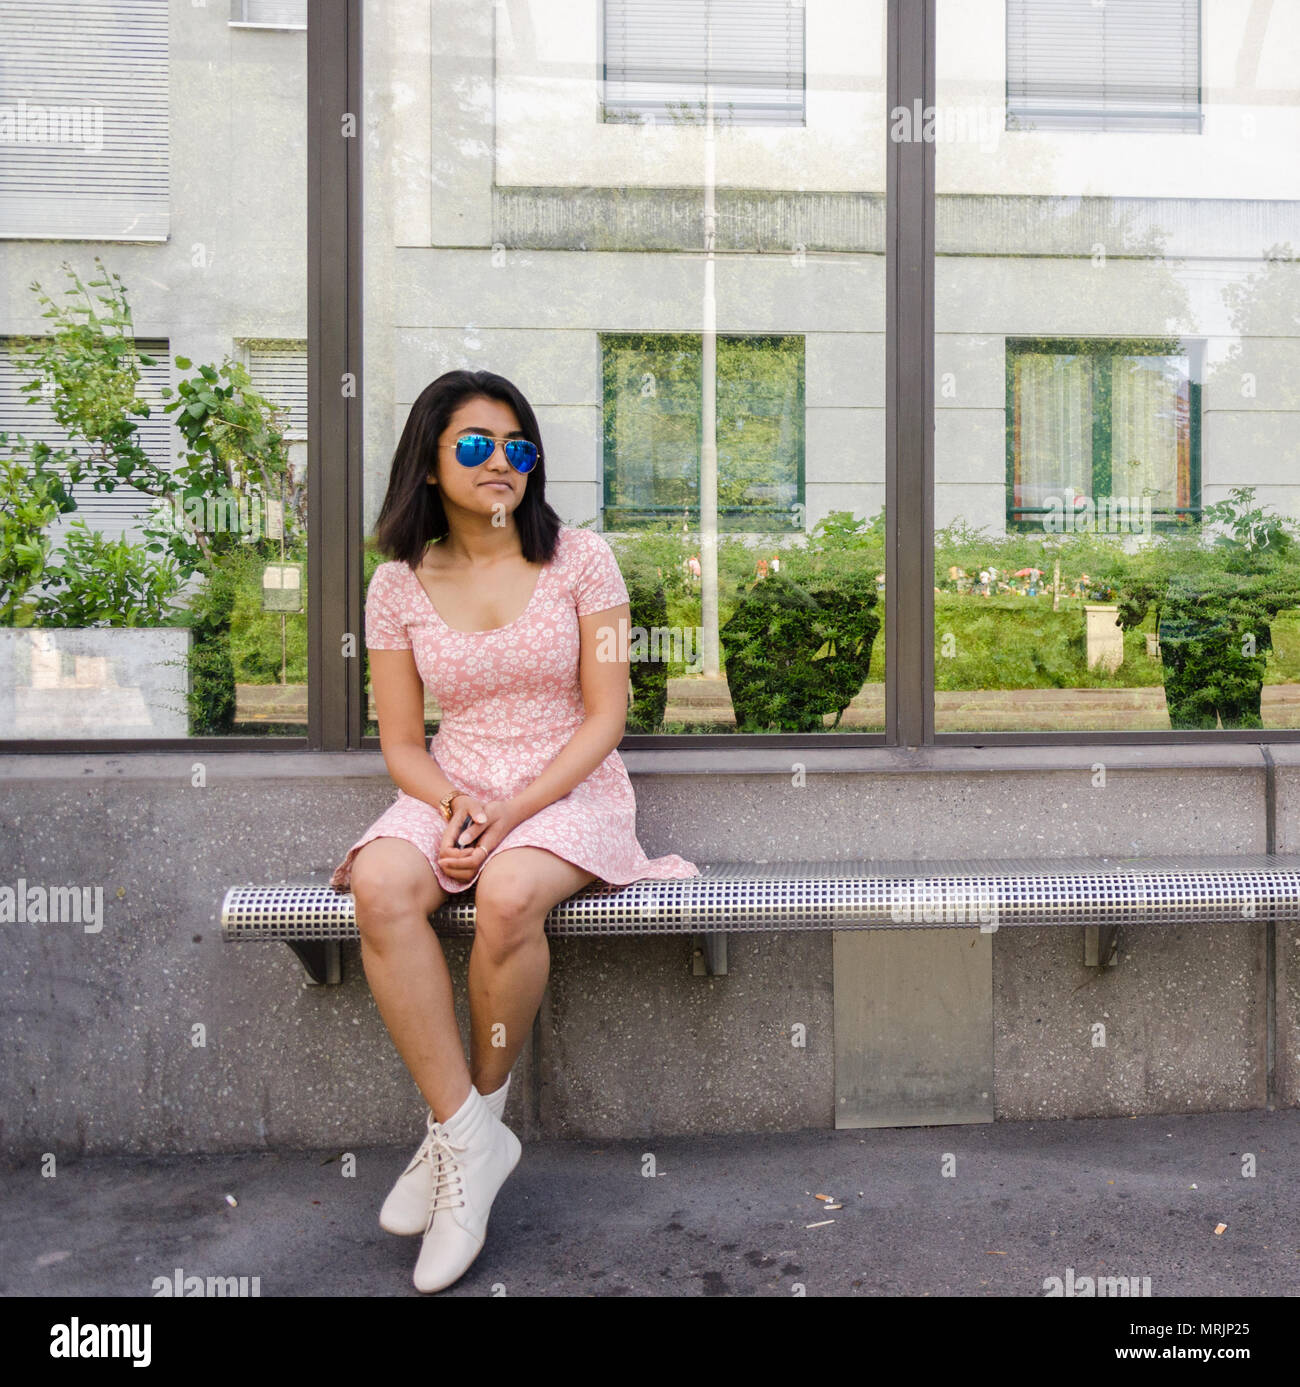 Pin by ♡Shital♡ on (Àlàsmîñ)❤️Siddneet | Fashion blogger poses, One piece  dress, Girl poses